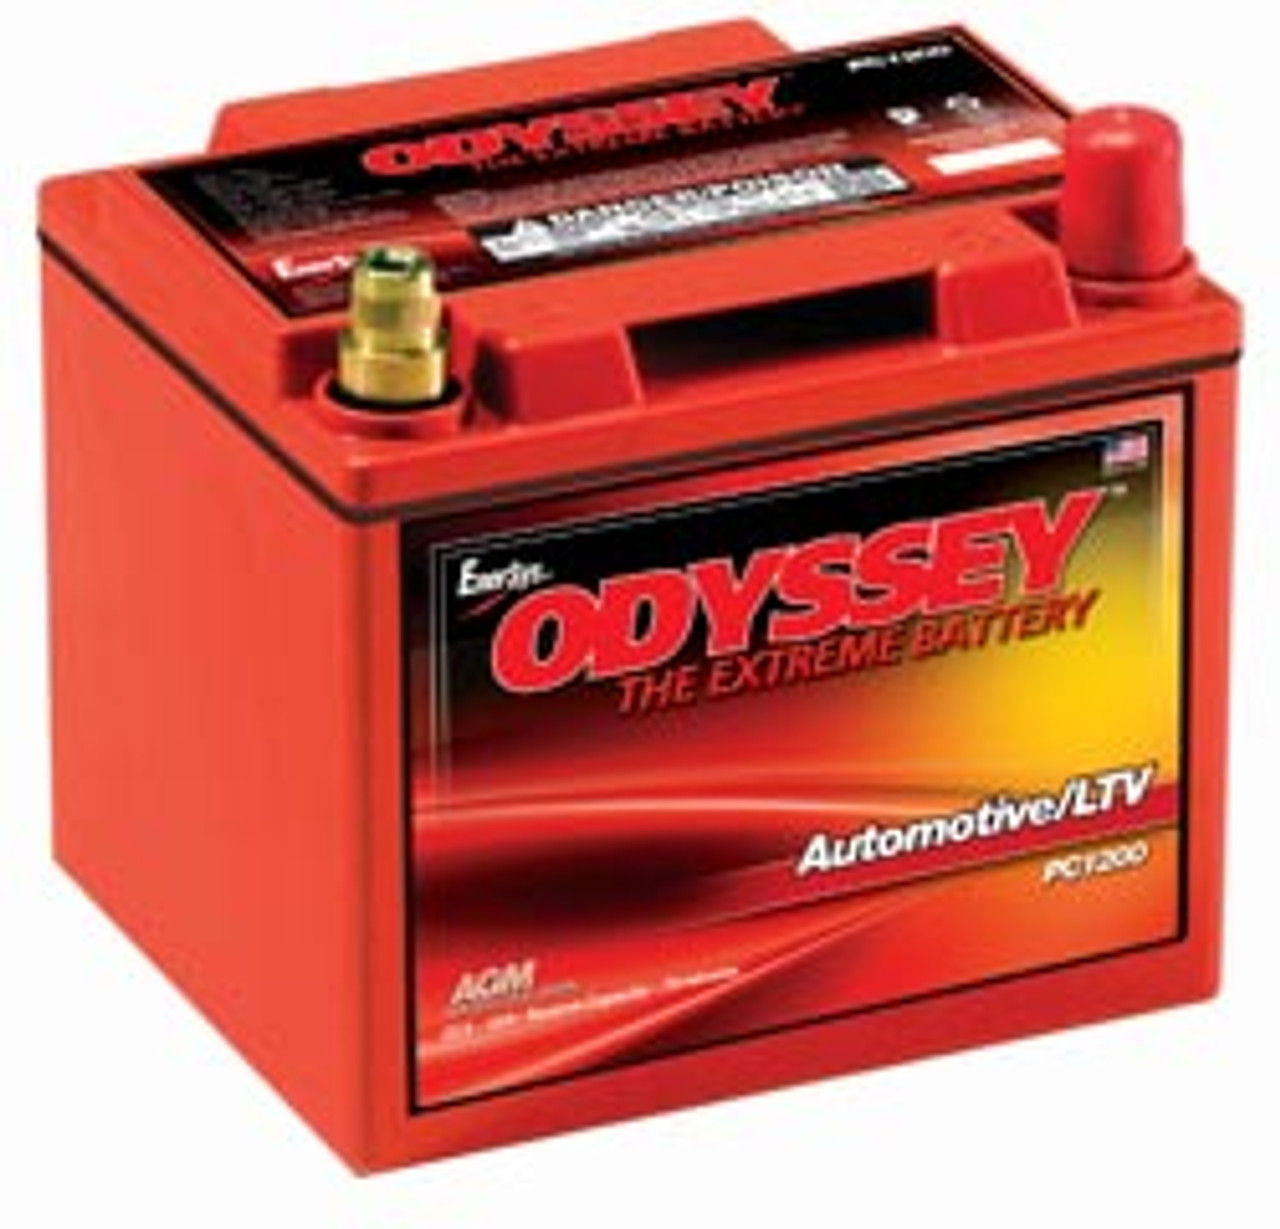 Battery pc. Odyssey аккумуляторы. Тяговые АКБ Одиссей красный. Odyssey extreme PC 1200. Аккумулятор автомобильный для Автозвука.